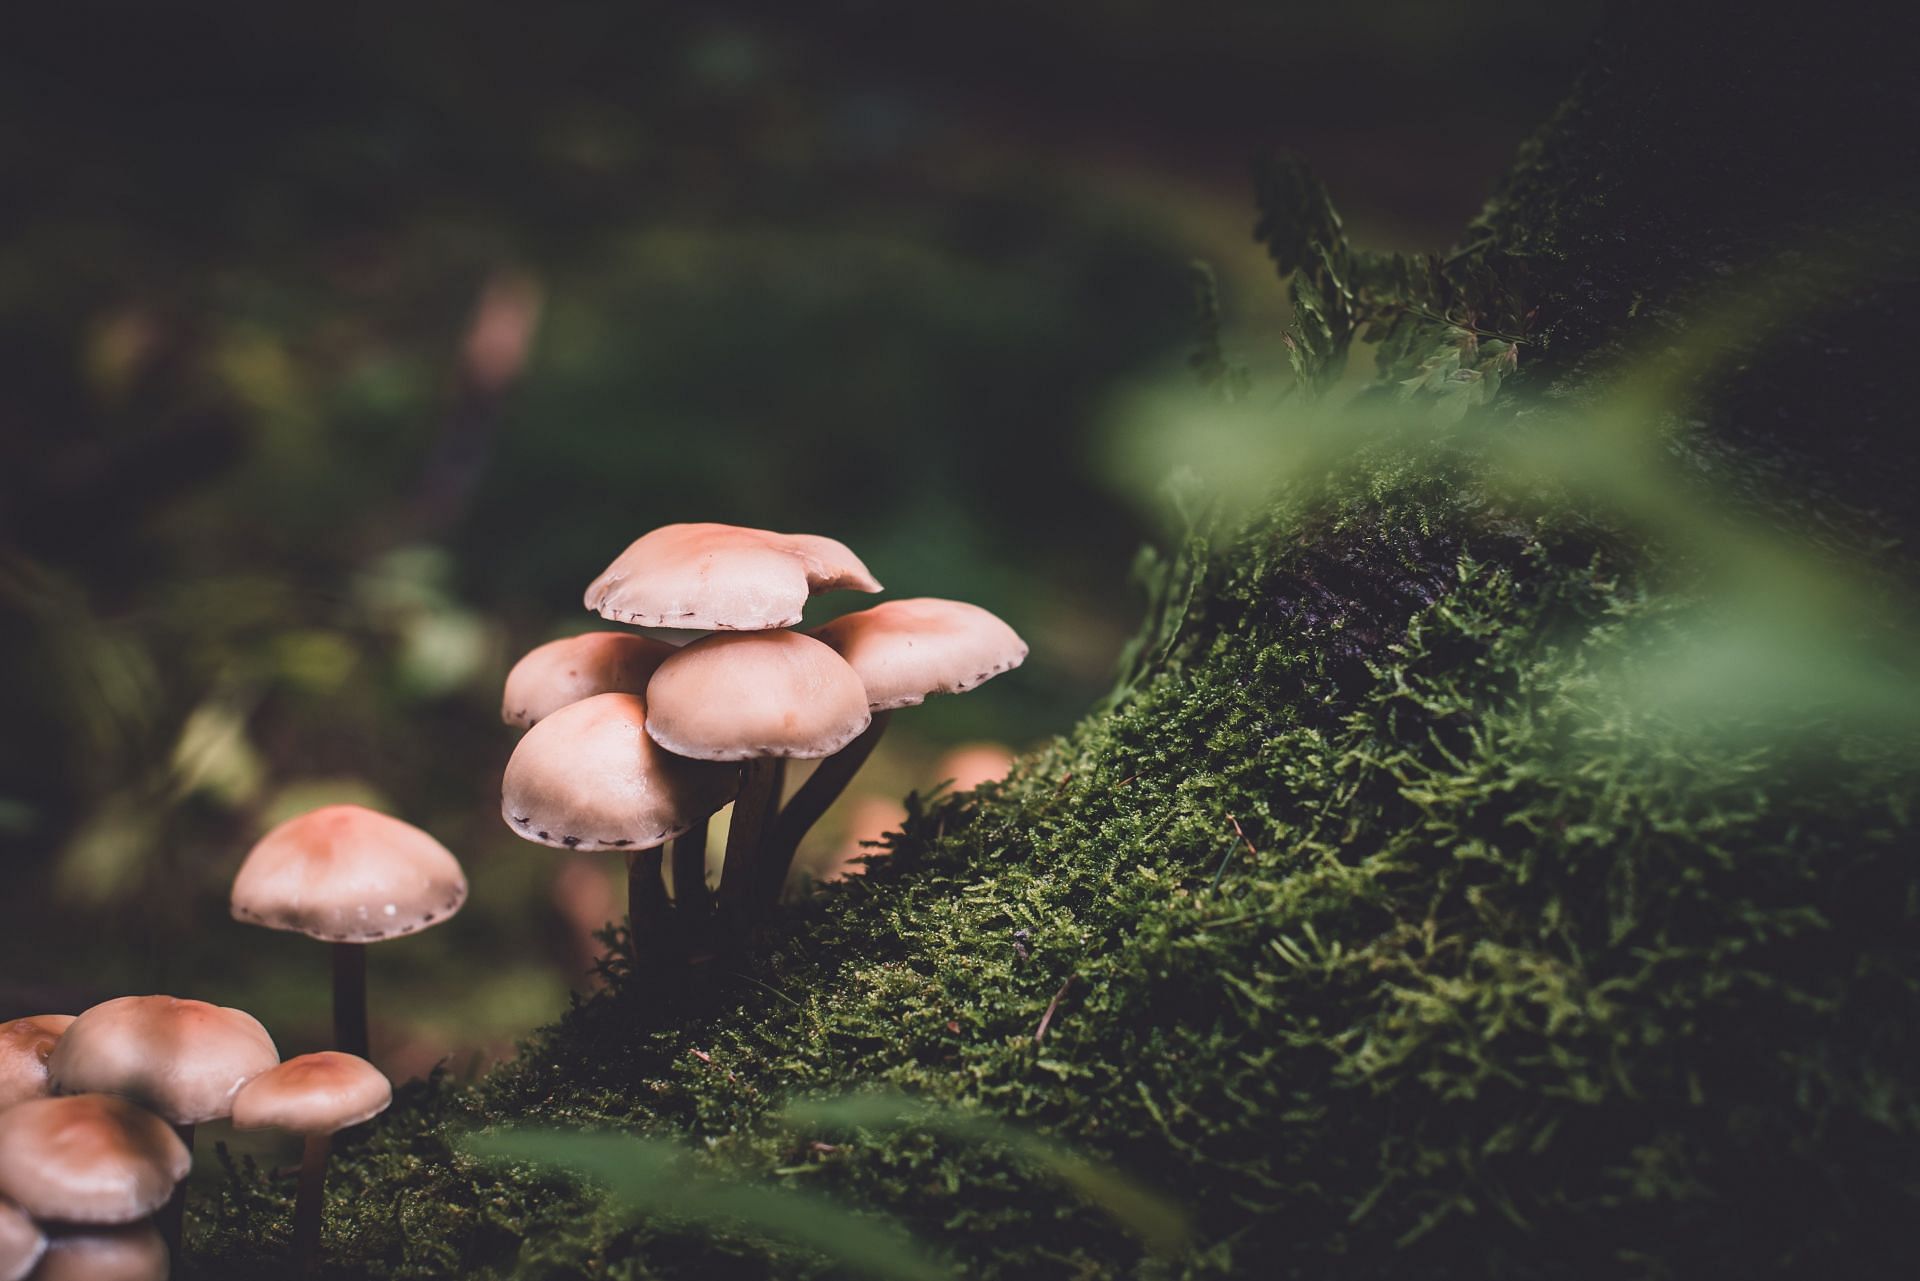 Types of mushrooms (Image via Unsplash/Presetbase)